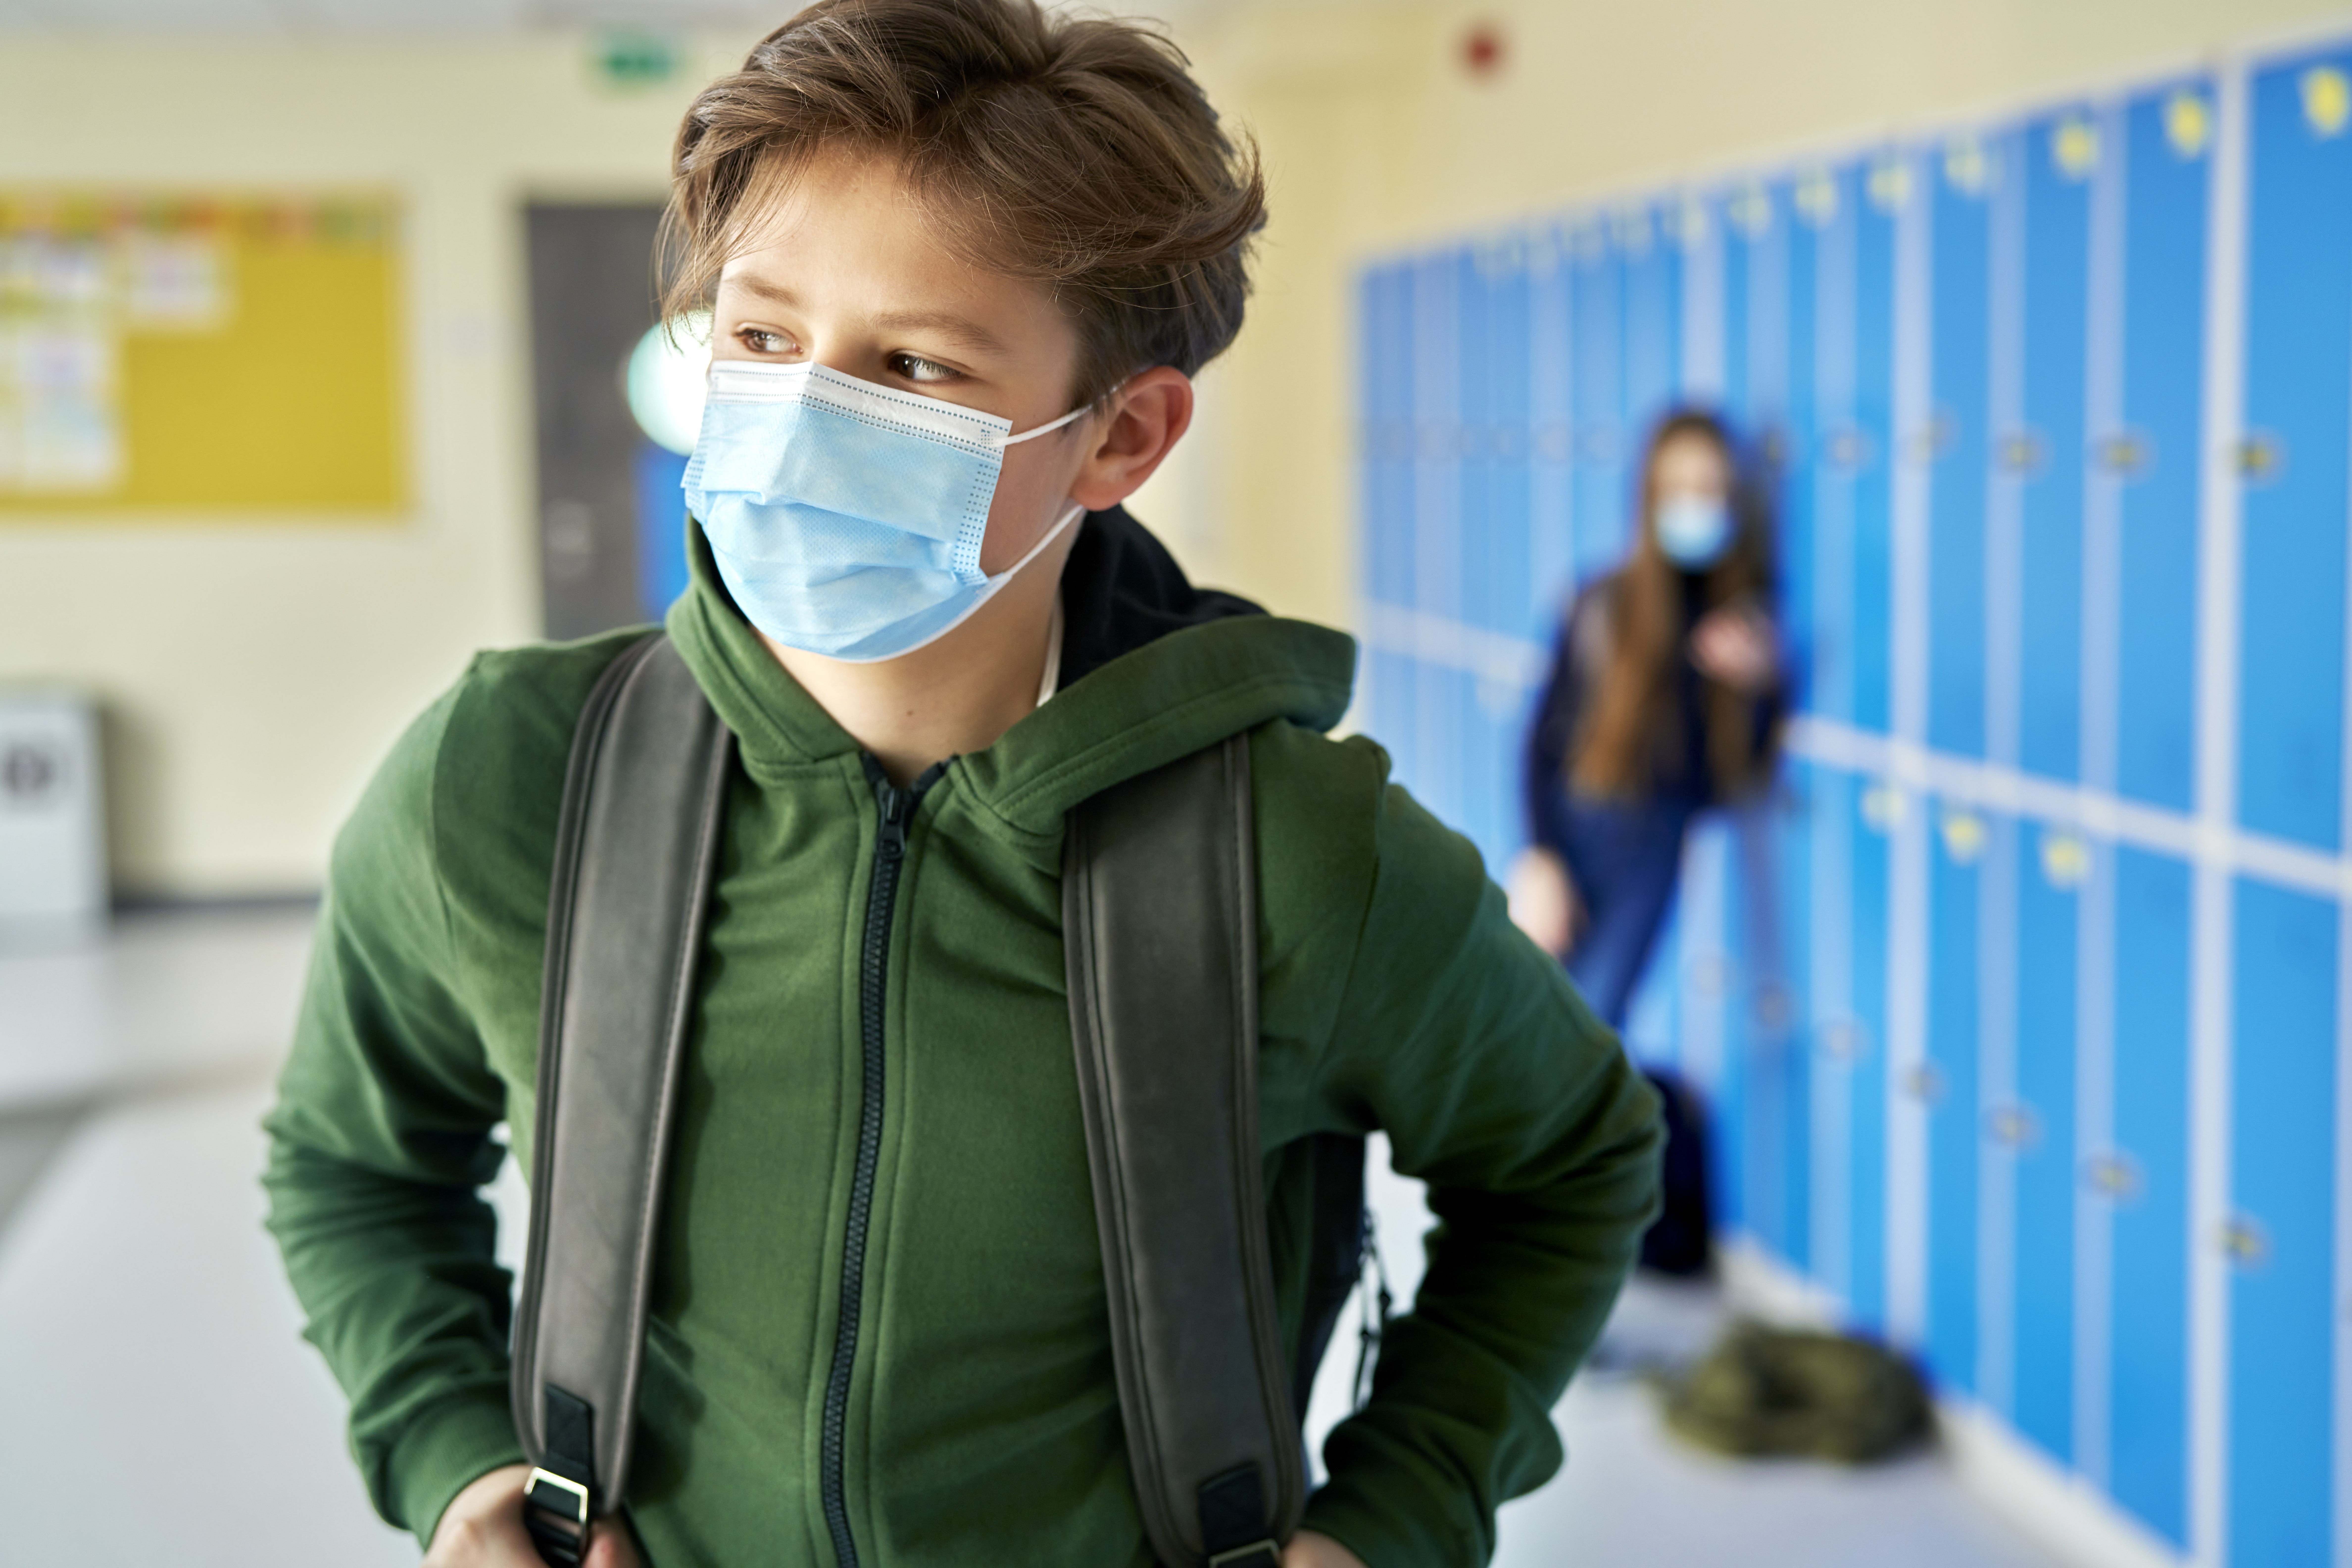 Evitar contagios en los centros escolares para evitar su cierre